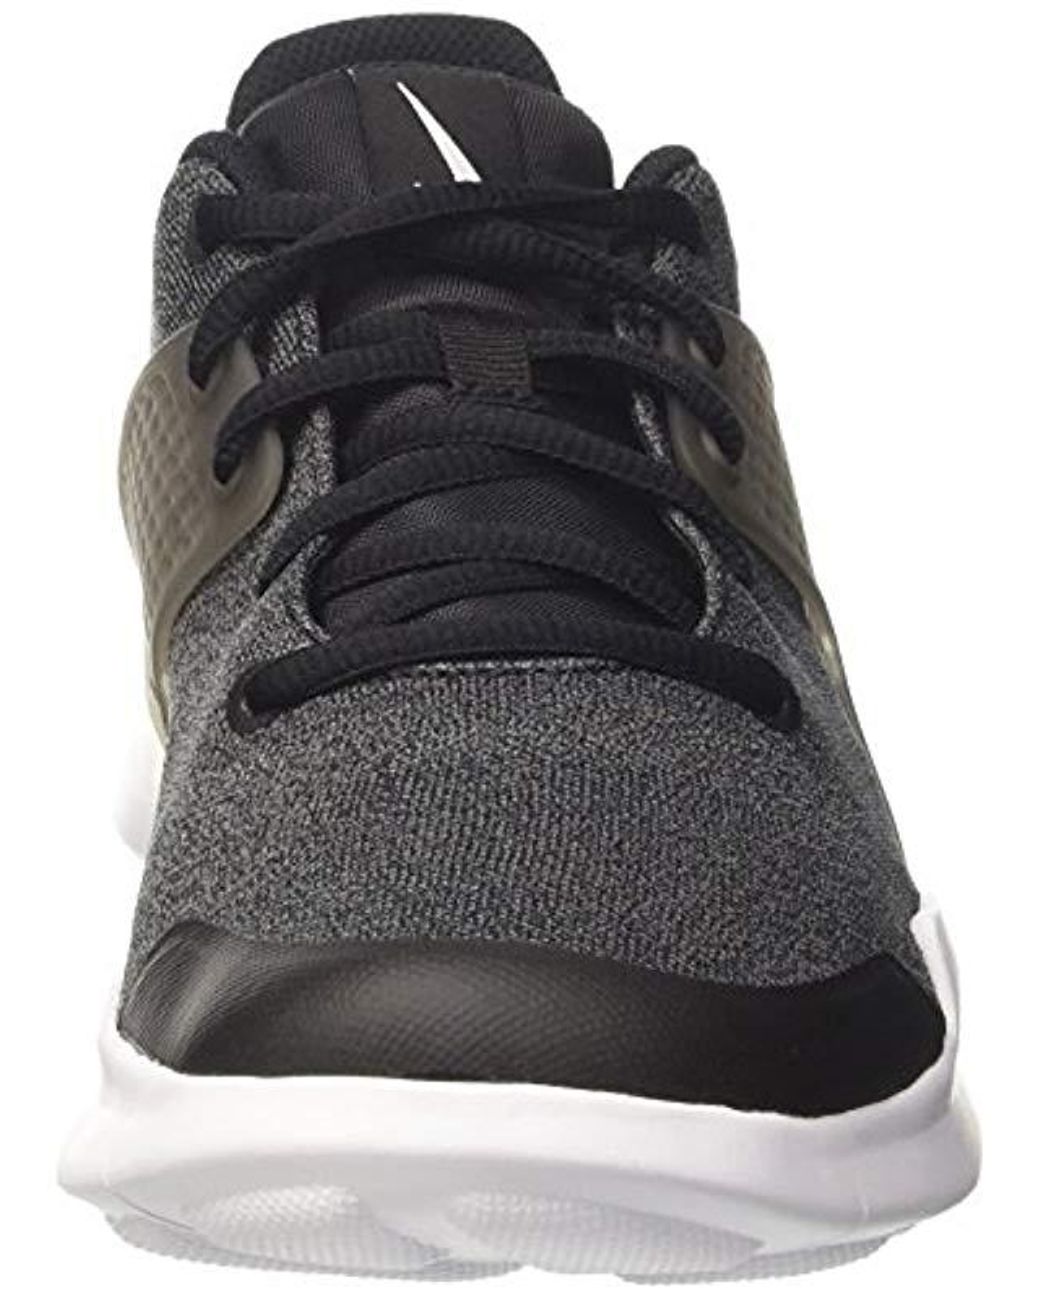 Nike Arrowz Sneaker in Black/Black/White/Anthracite (Black) for Men | Lyst